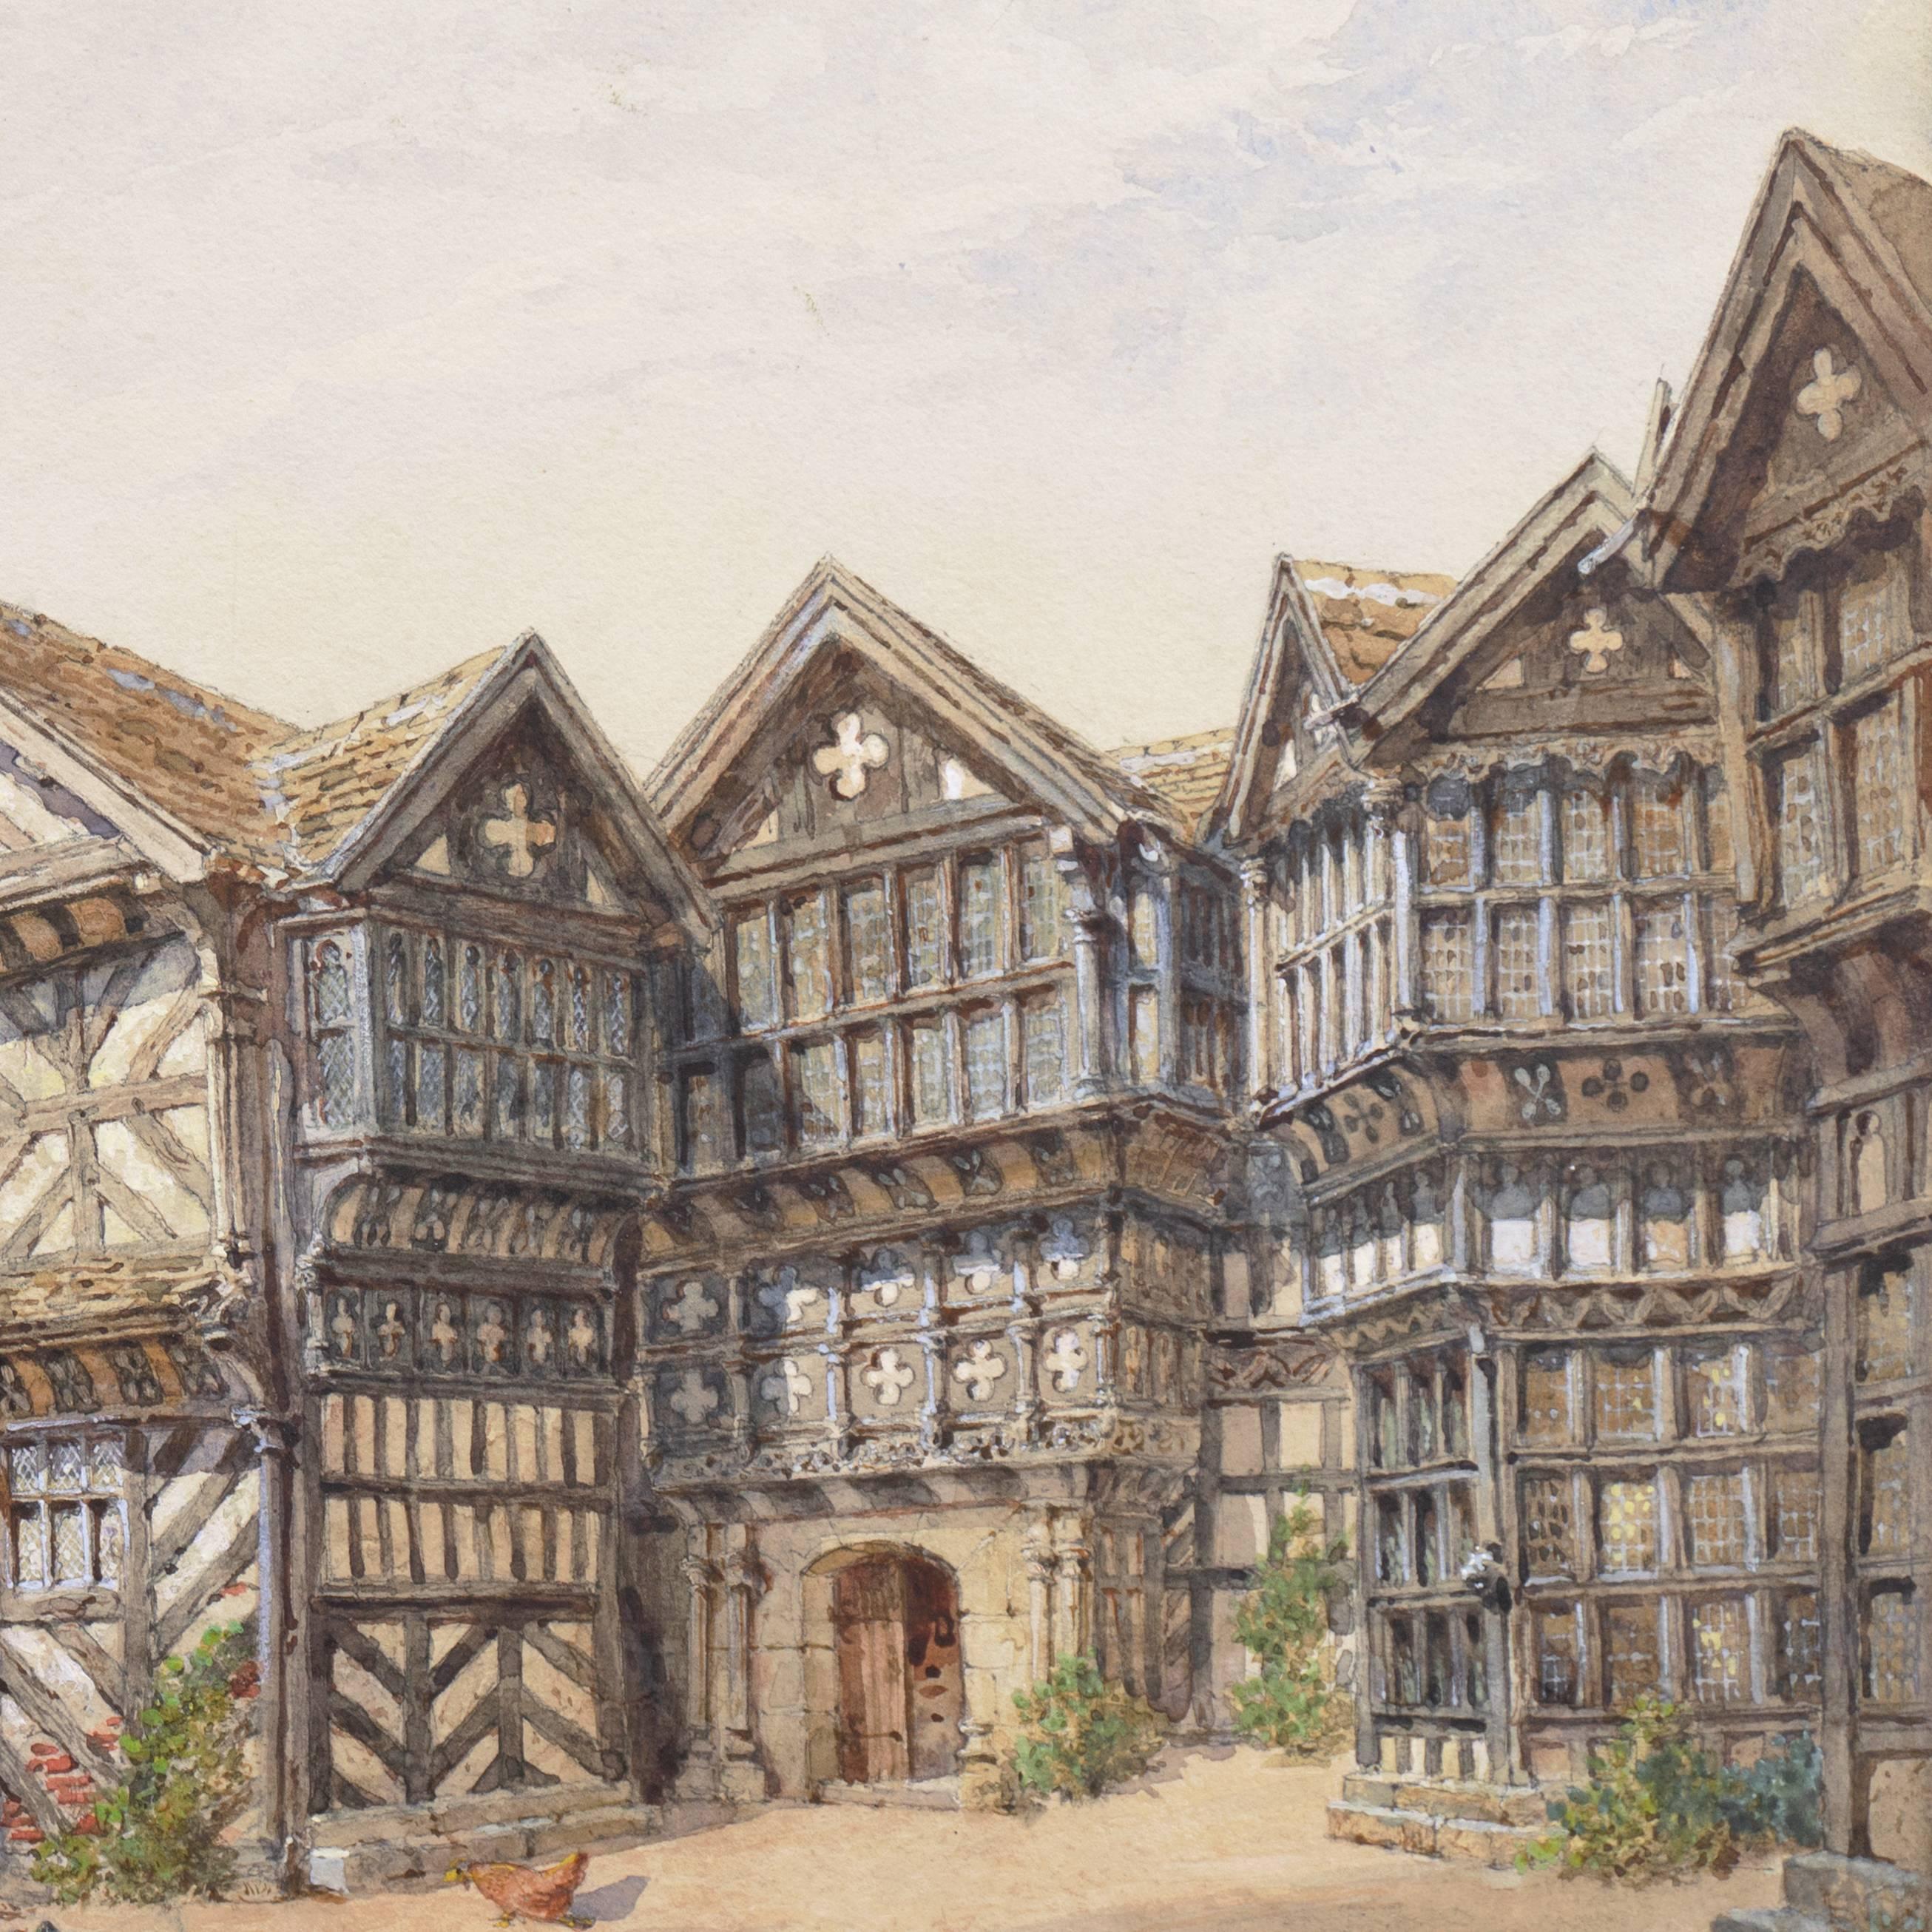 Eine außerordentlich schöne Studie über dieses denkmalgeschützte Tudor-Gutshaus in der englischen Grafschaft Cheshire. 

Signiert unten rechts 